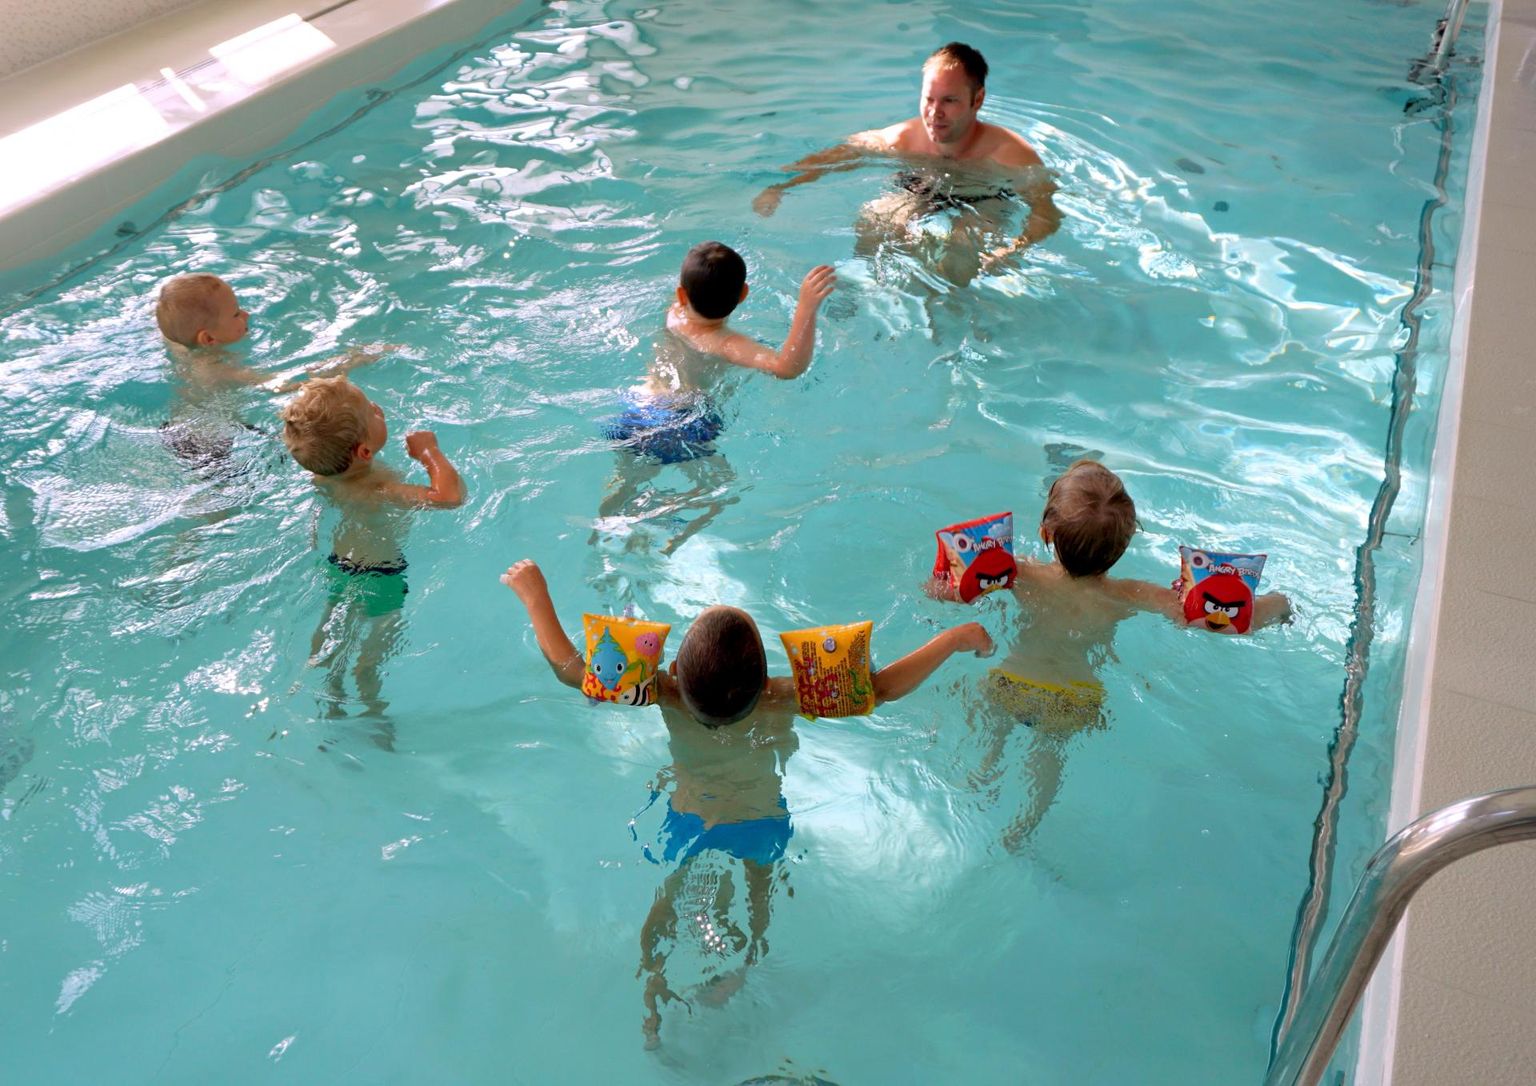 Alar Karu: "Kui meie ühine eesmärk võiks olla ujumisoskuse saavutamine esimesel võimalusel, võiksime kaaluda varianti õpetada ujumist seal, kuhu lapsed enamasti kõigepealt õppima satuvad: lasteaias."